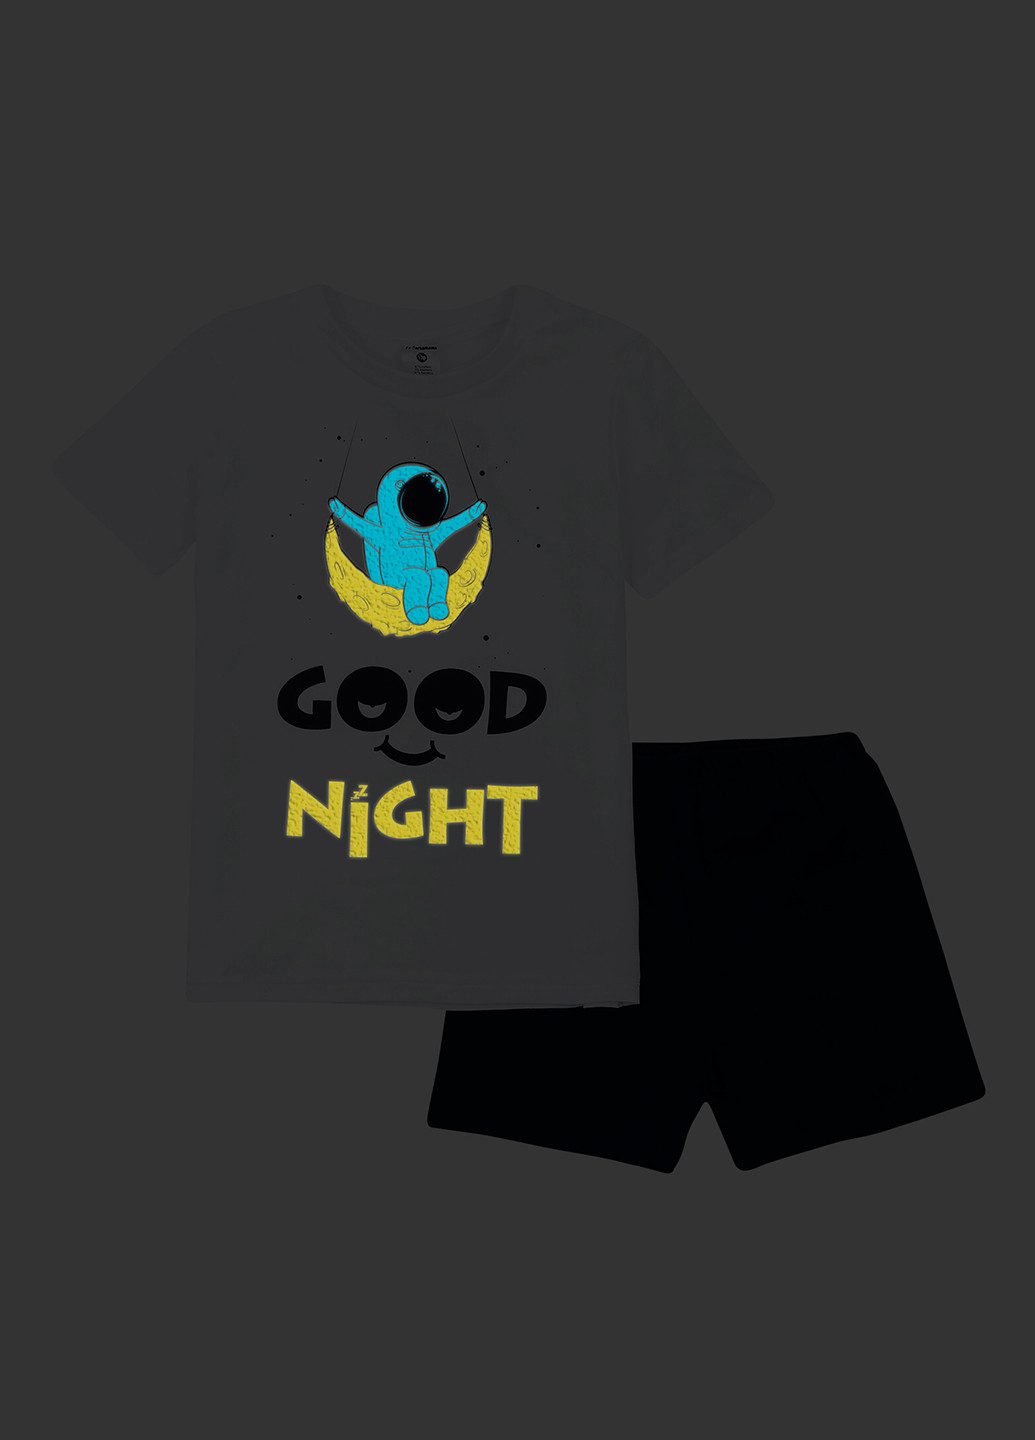 Комбинированная всесезон пижама (футболка, шорты) футболка + шорты Garnamama